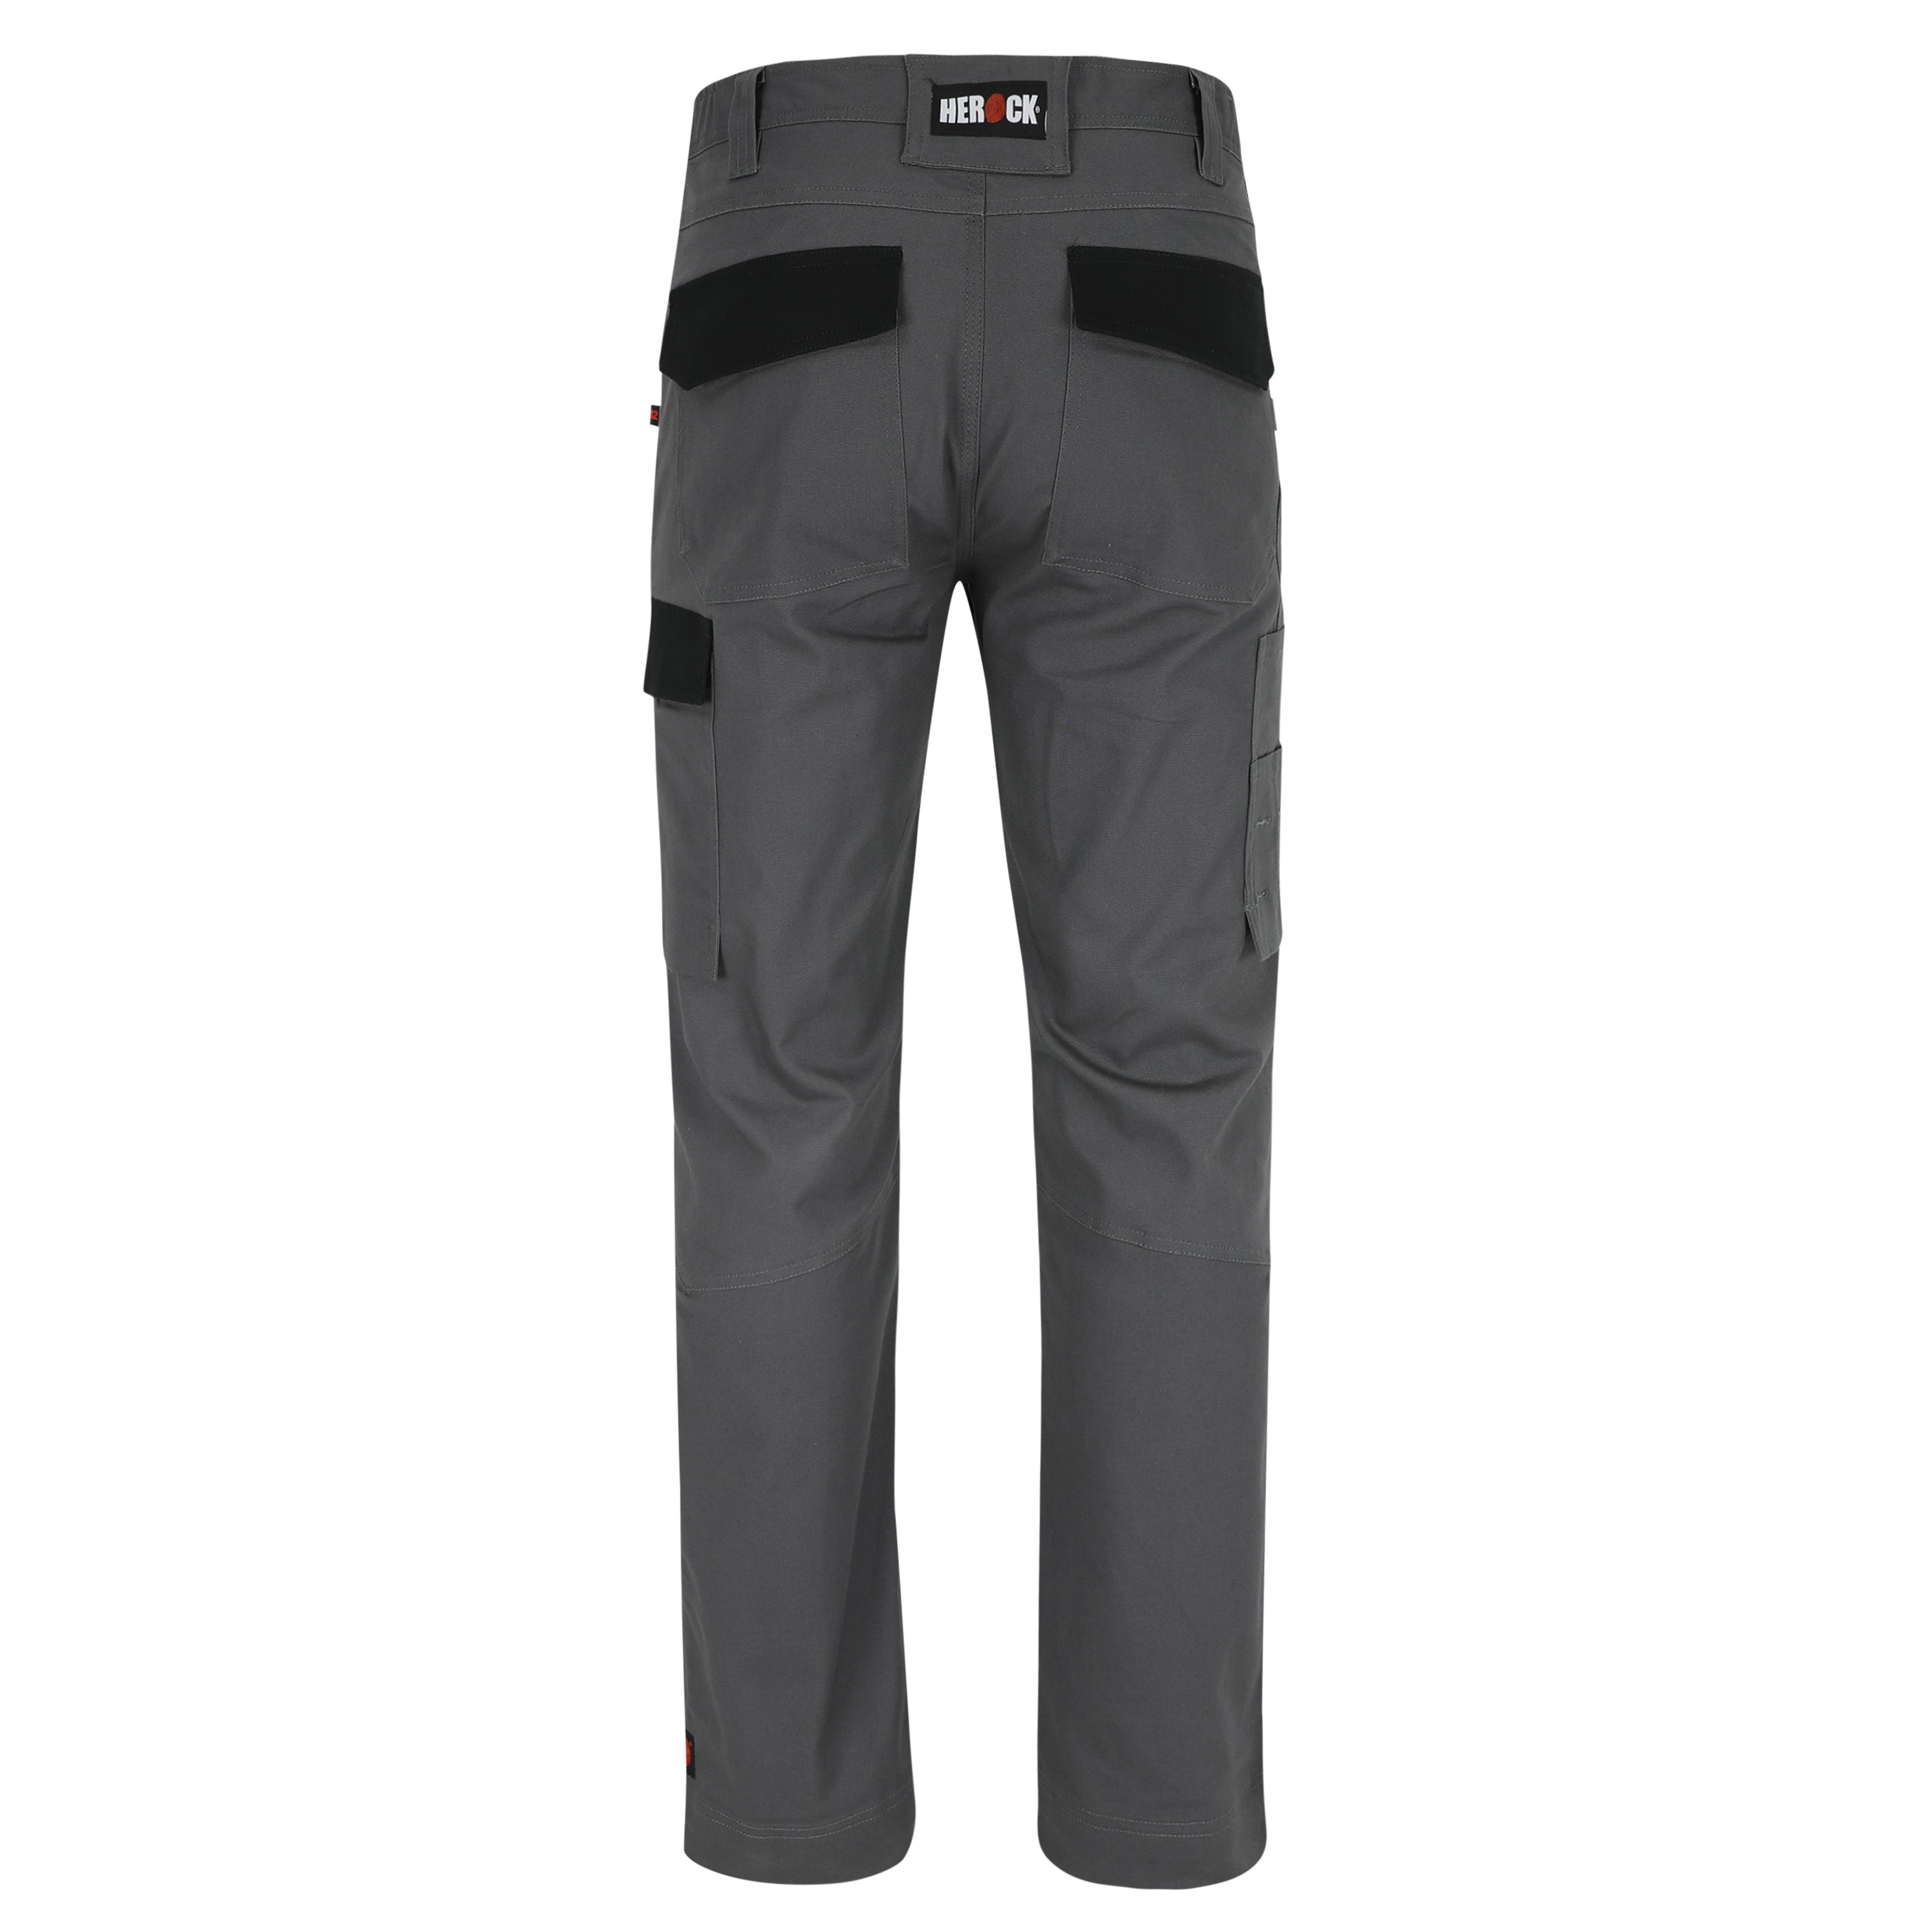 Pantalon travail extensible poches genoux Dero Herock gris vue 1 cotepro.fr